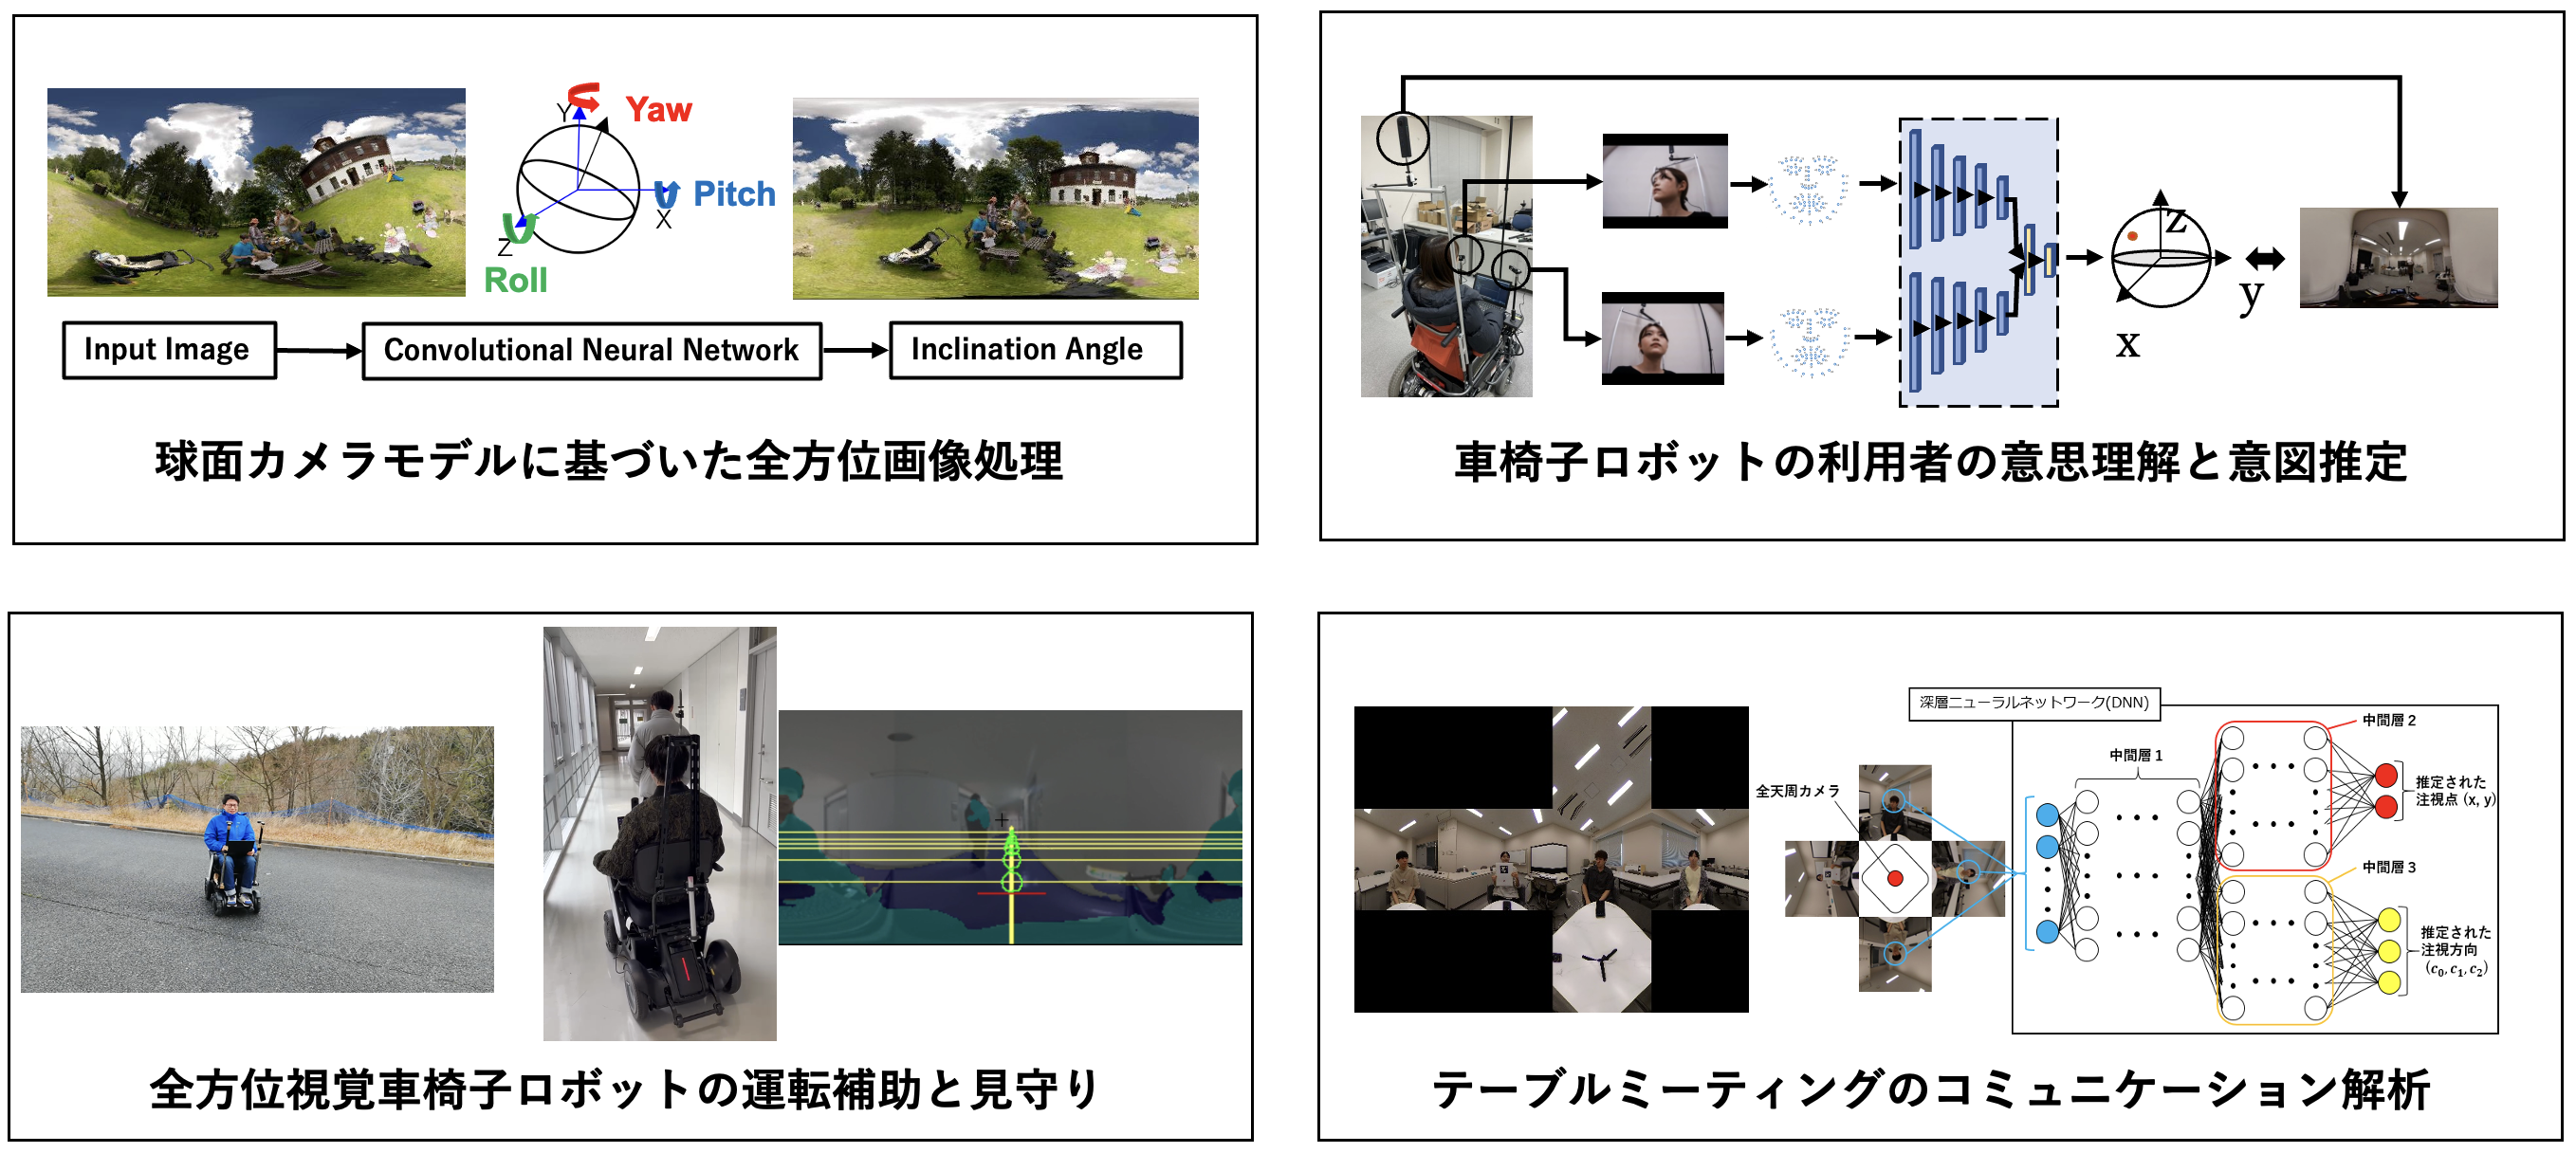 ロボットビジョン、全方位視覚車椅子ロボット、視覚言語情報処理